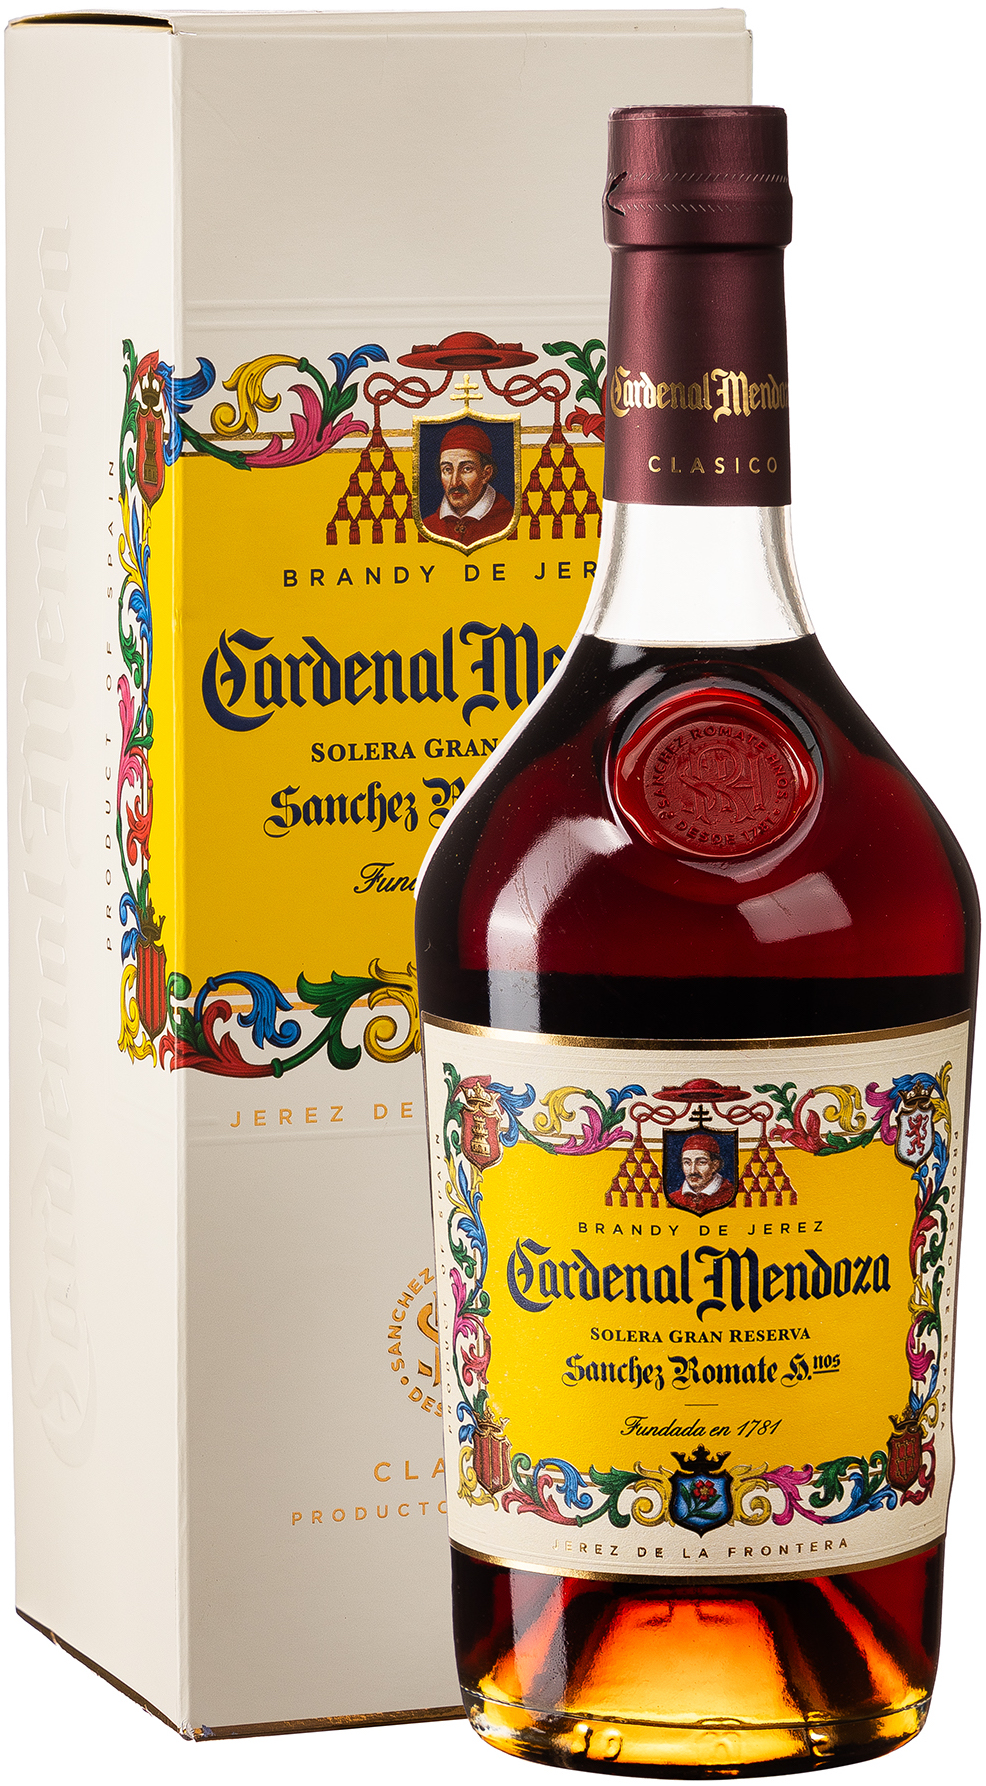 Cardenal Mendoza Solera Gran Reserva Brandy de Jerez 40% vol. 0,7L